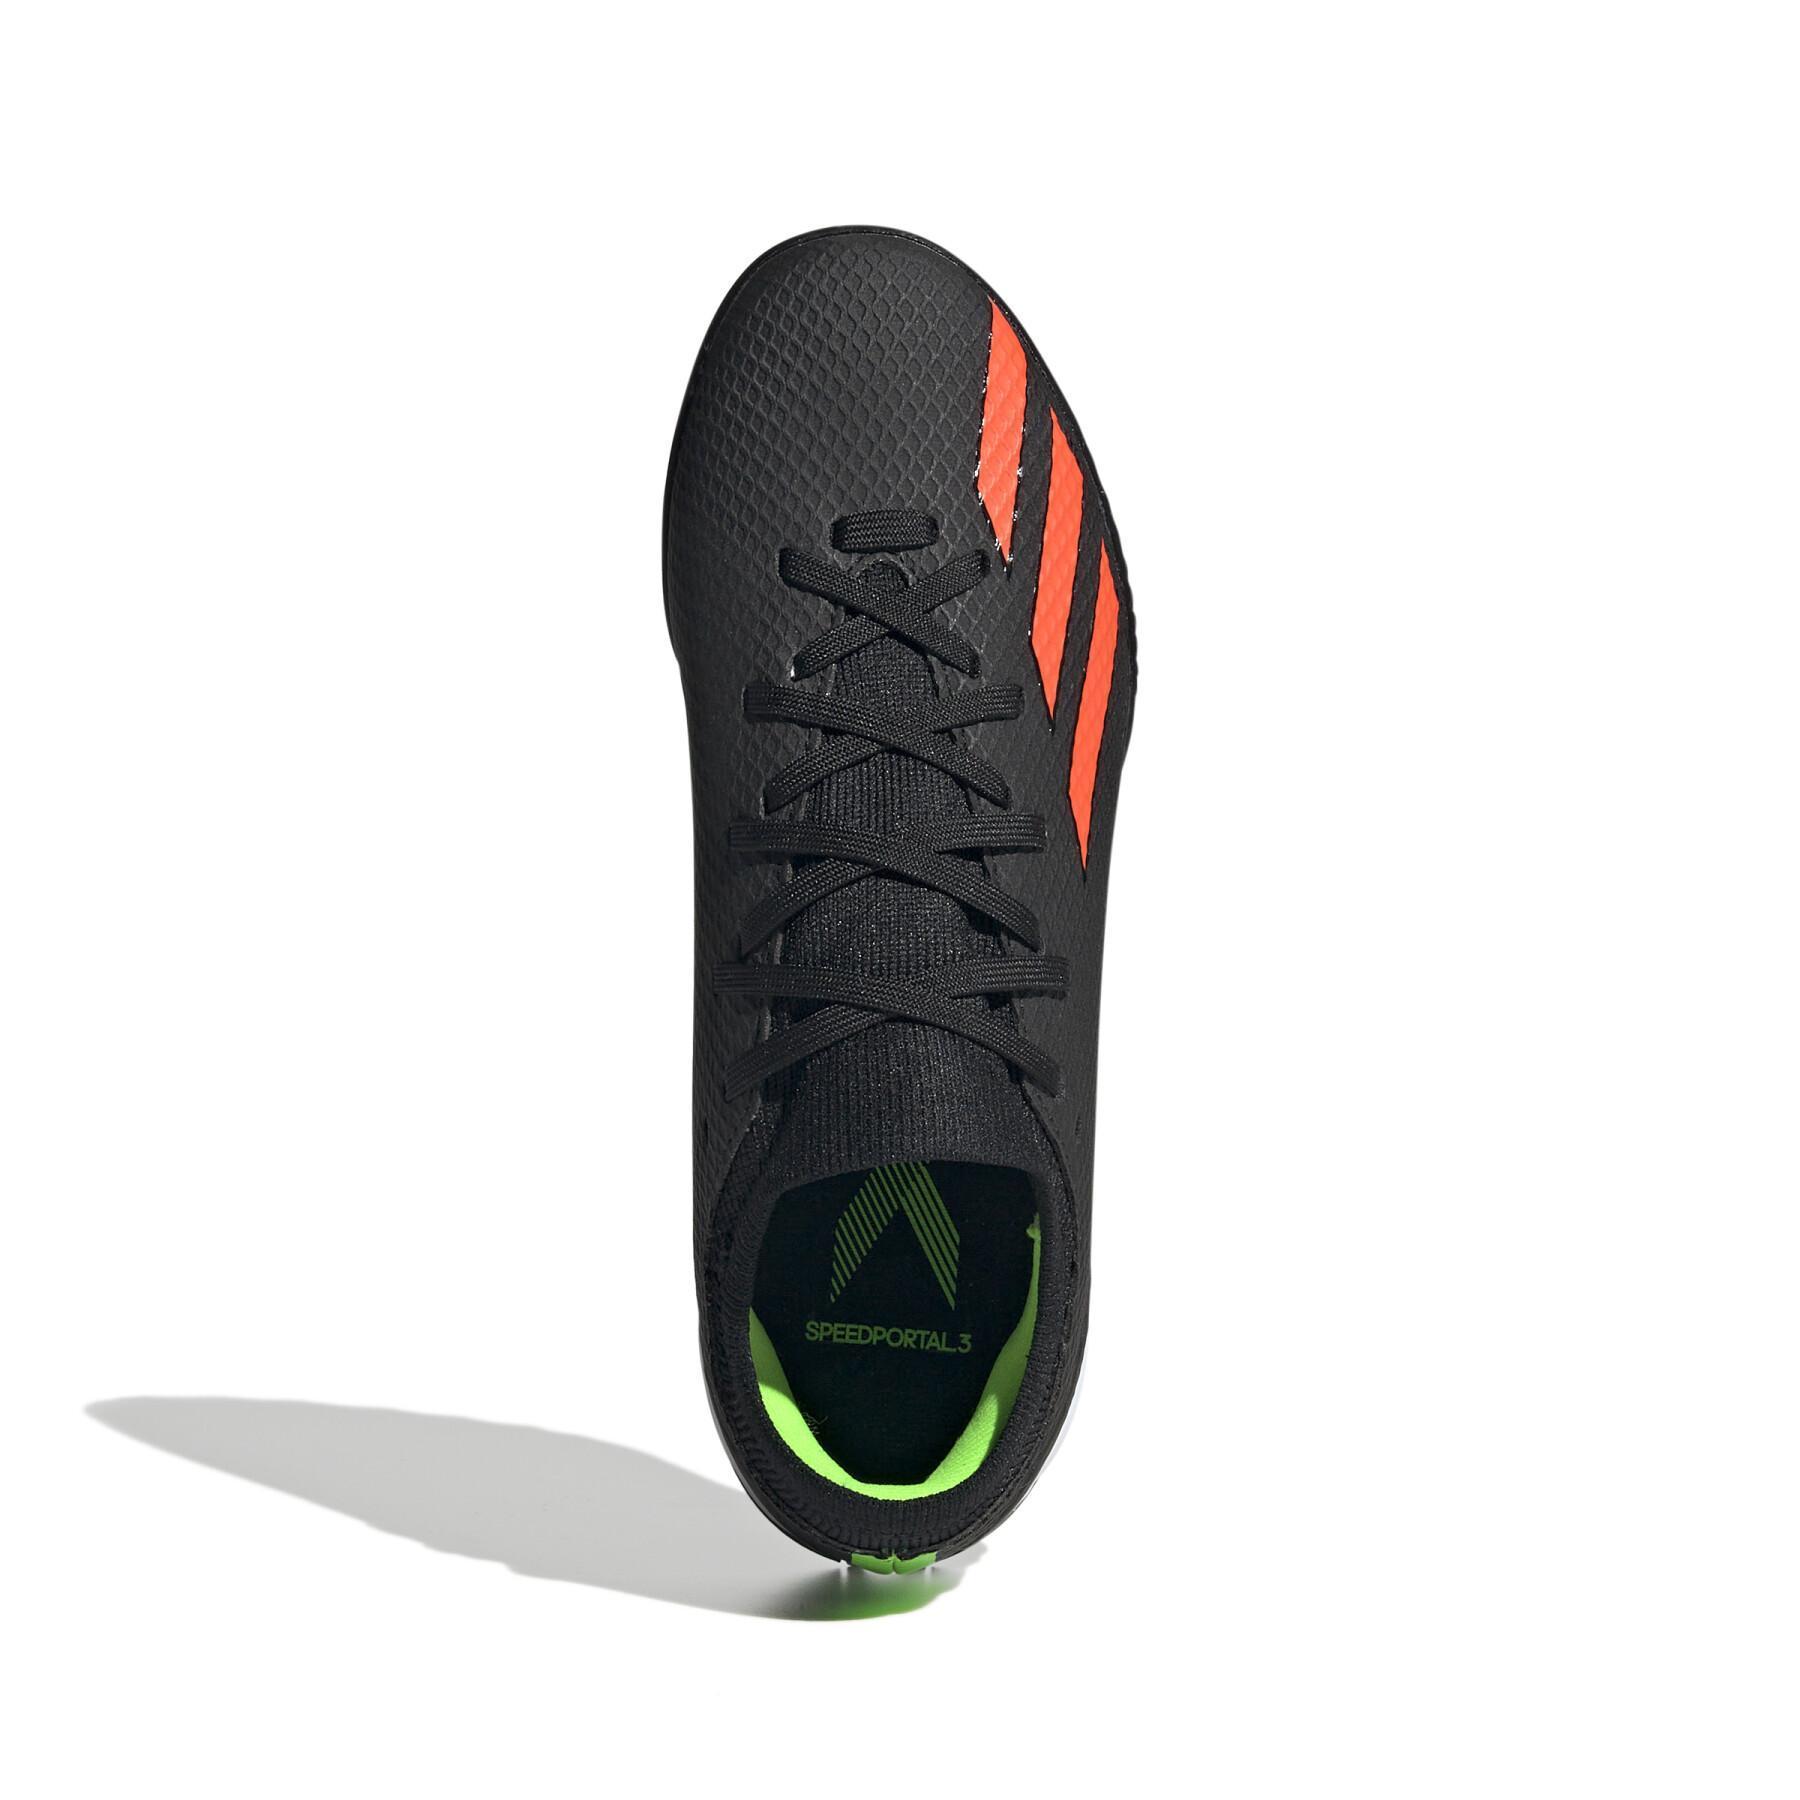 Fotbollsskor för barn adidas X Speedportal.3 Turf - Shadowportal